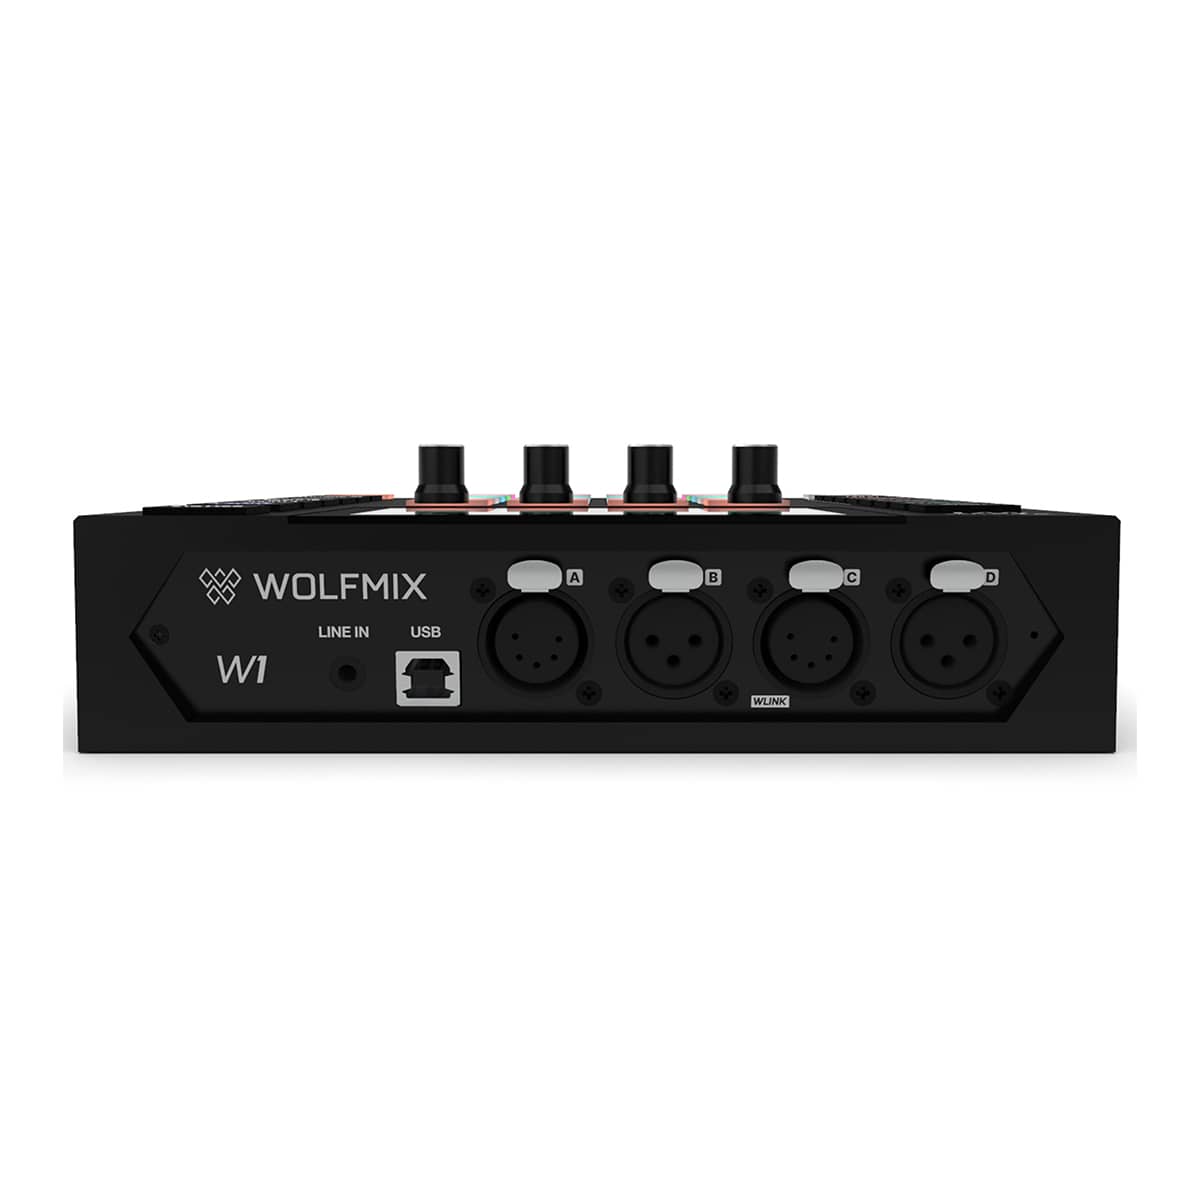 Wolfmix W1 Contrôleur DMX autonome : avis, prix et